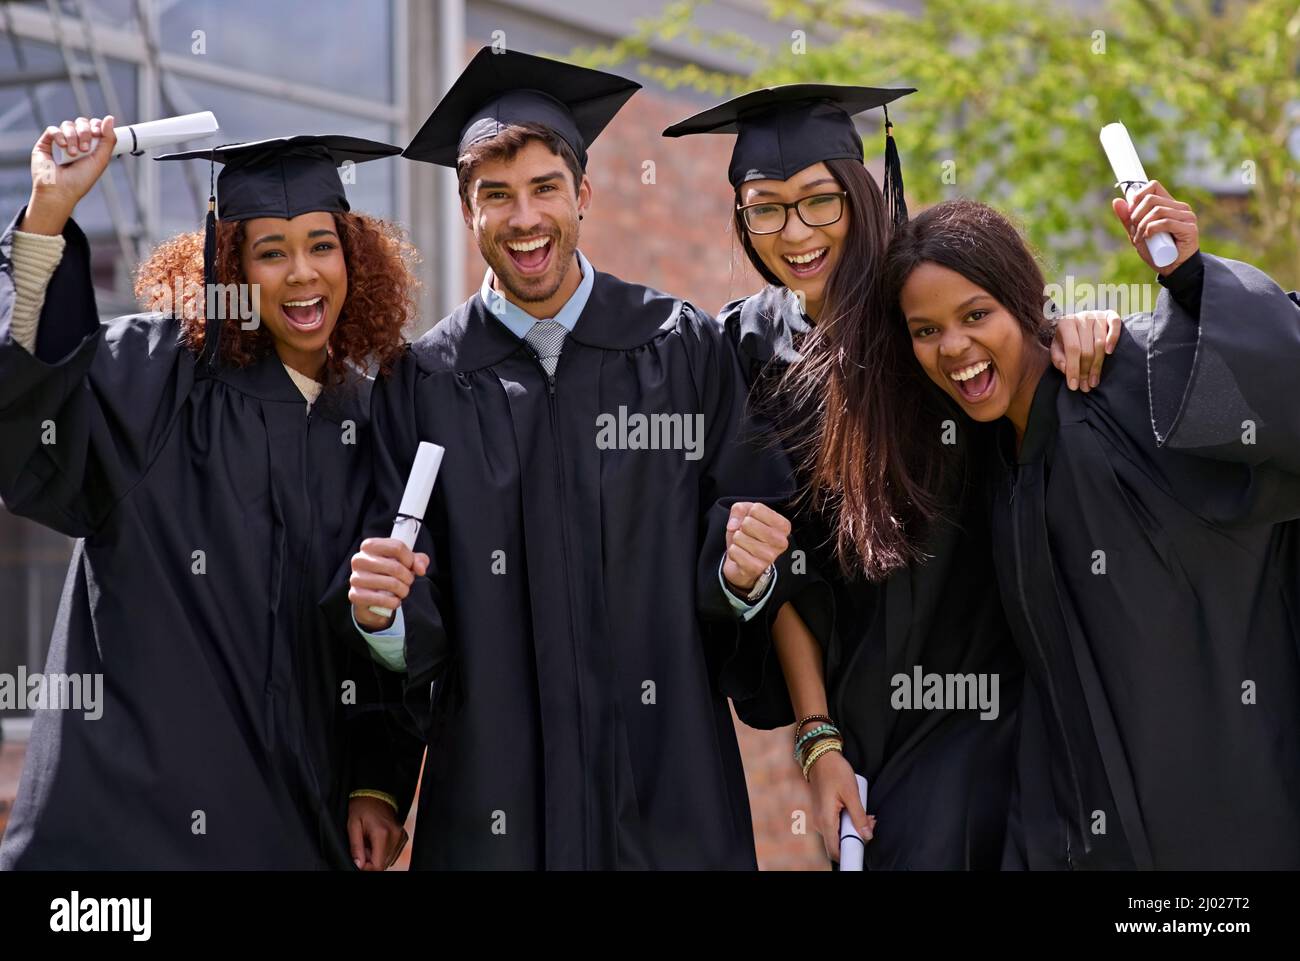 Éxito de la educación extática. Fotografía de estudiantes universitarios emocionados en el día de graduación. Foto de stock